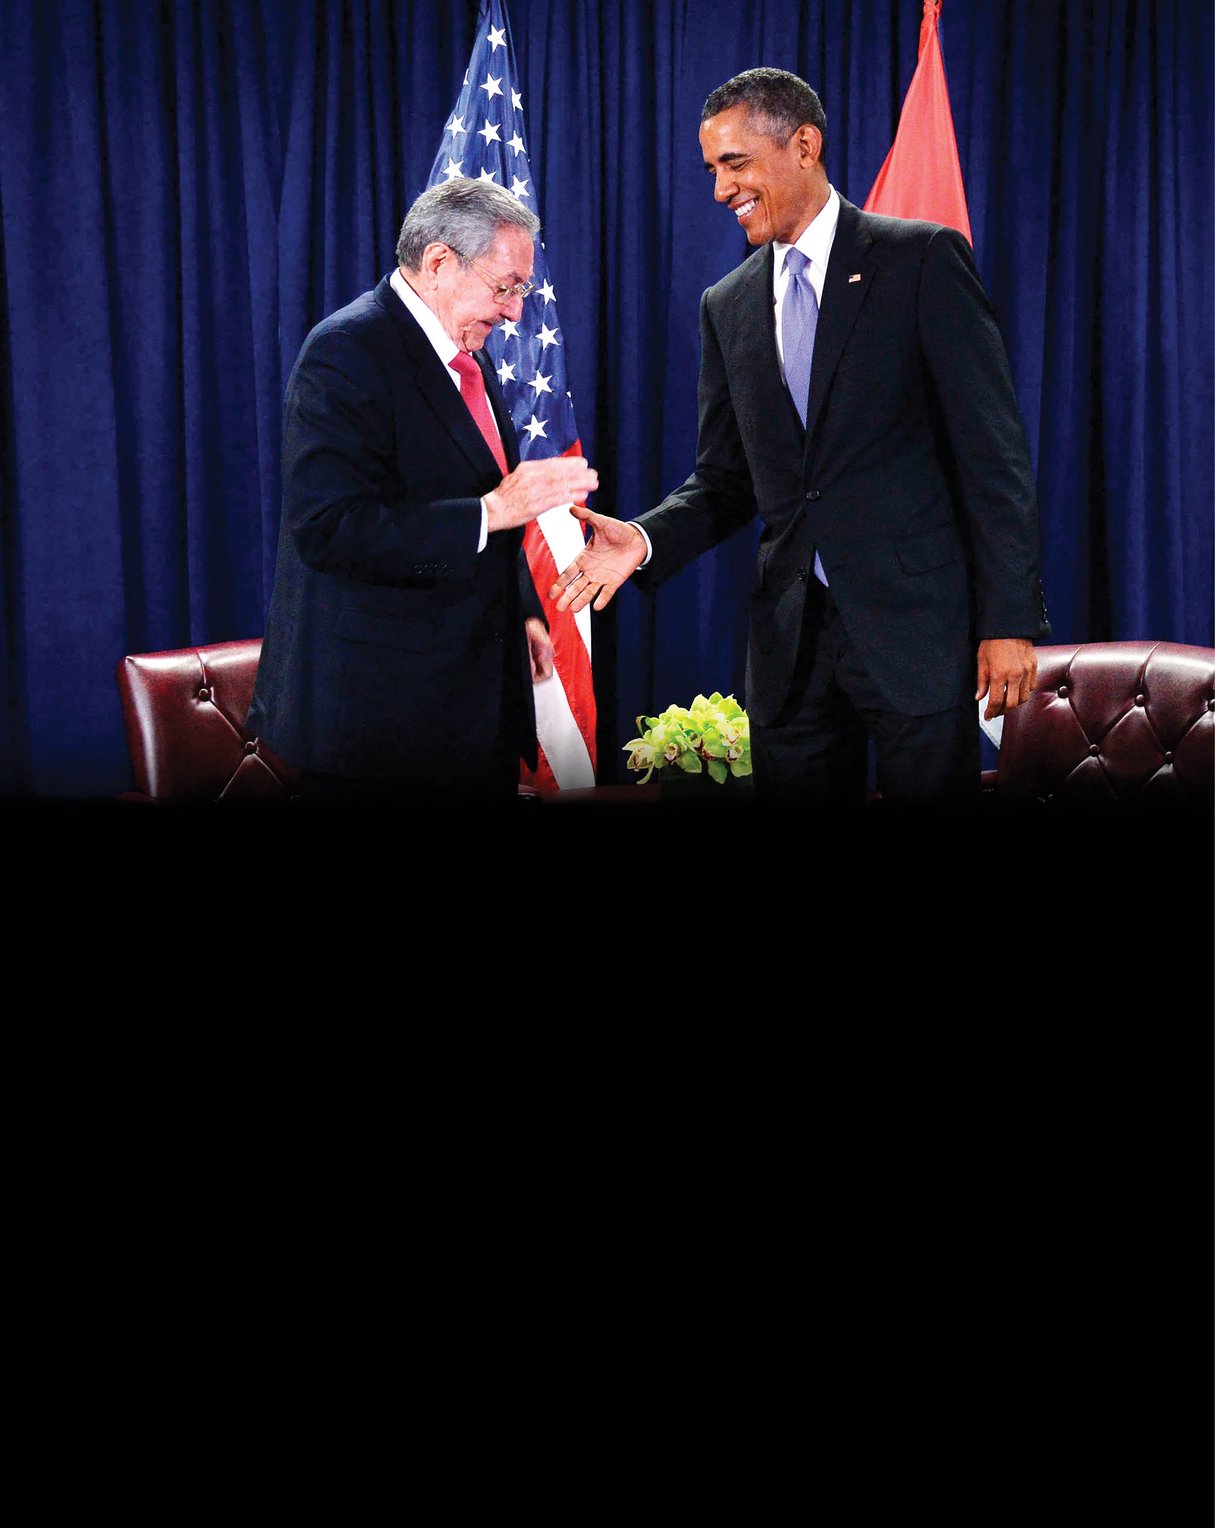 Entrevue entre Barack Obama et Raúl Castro au siège de l'ONU, à New York, le 29 septembre 2015. &copy; SIPANY/SIPA